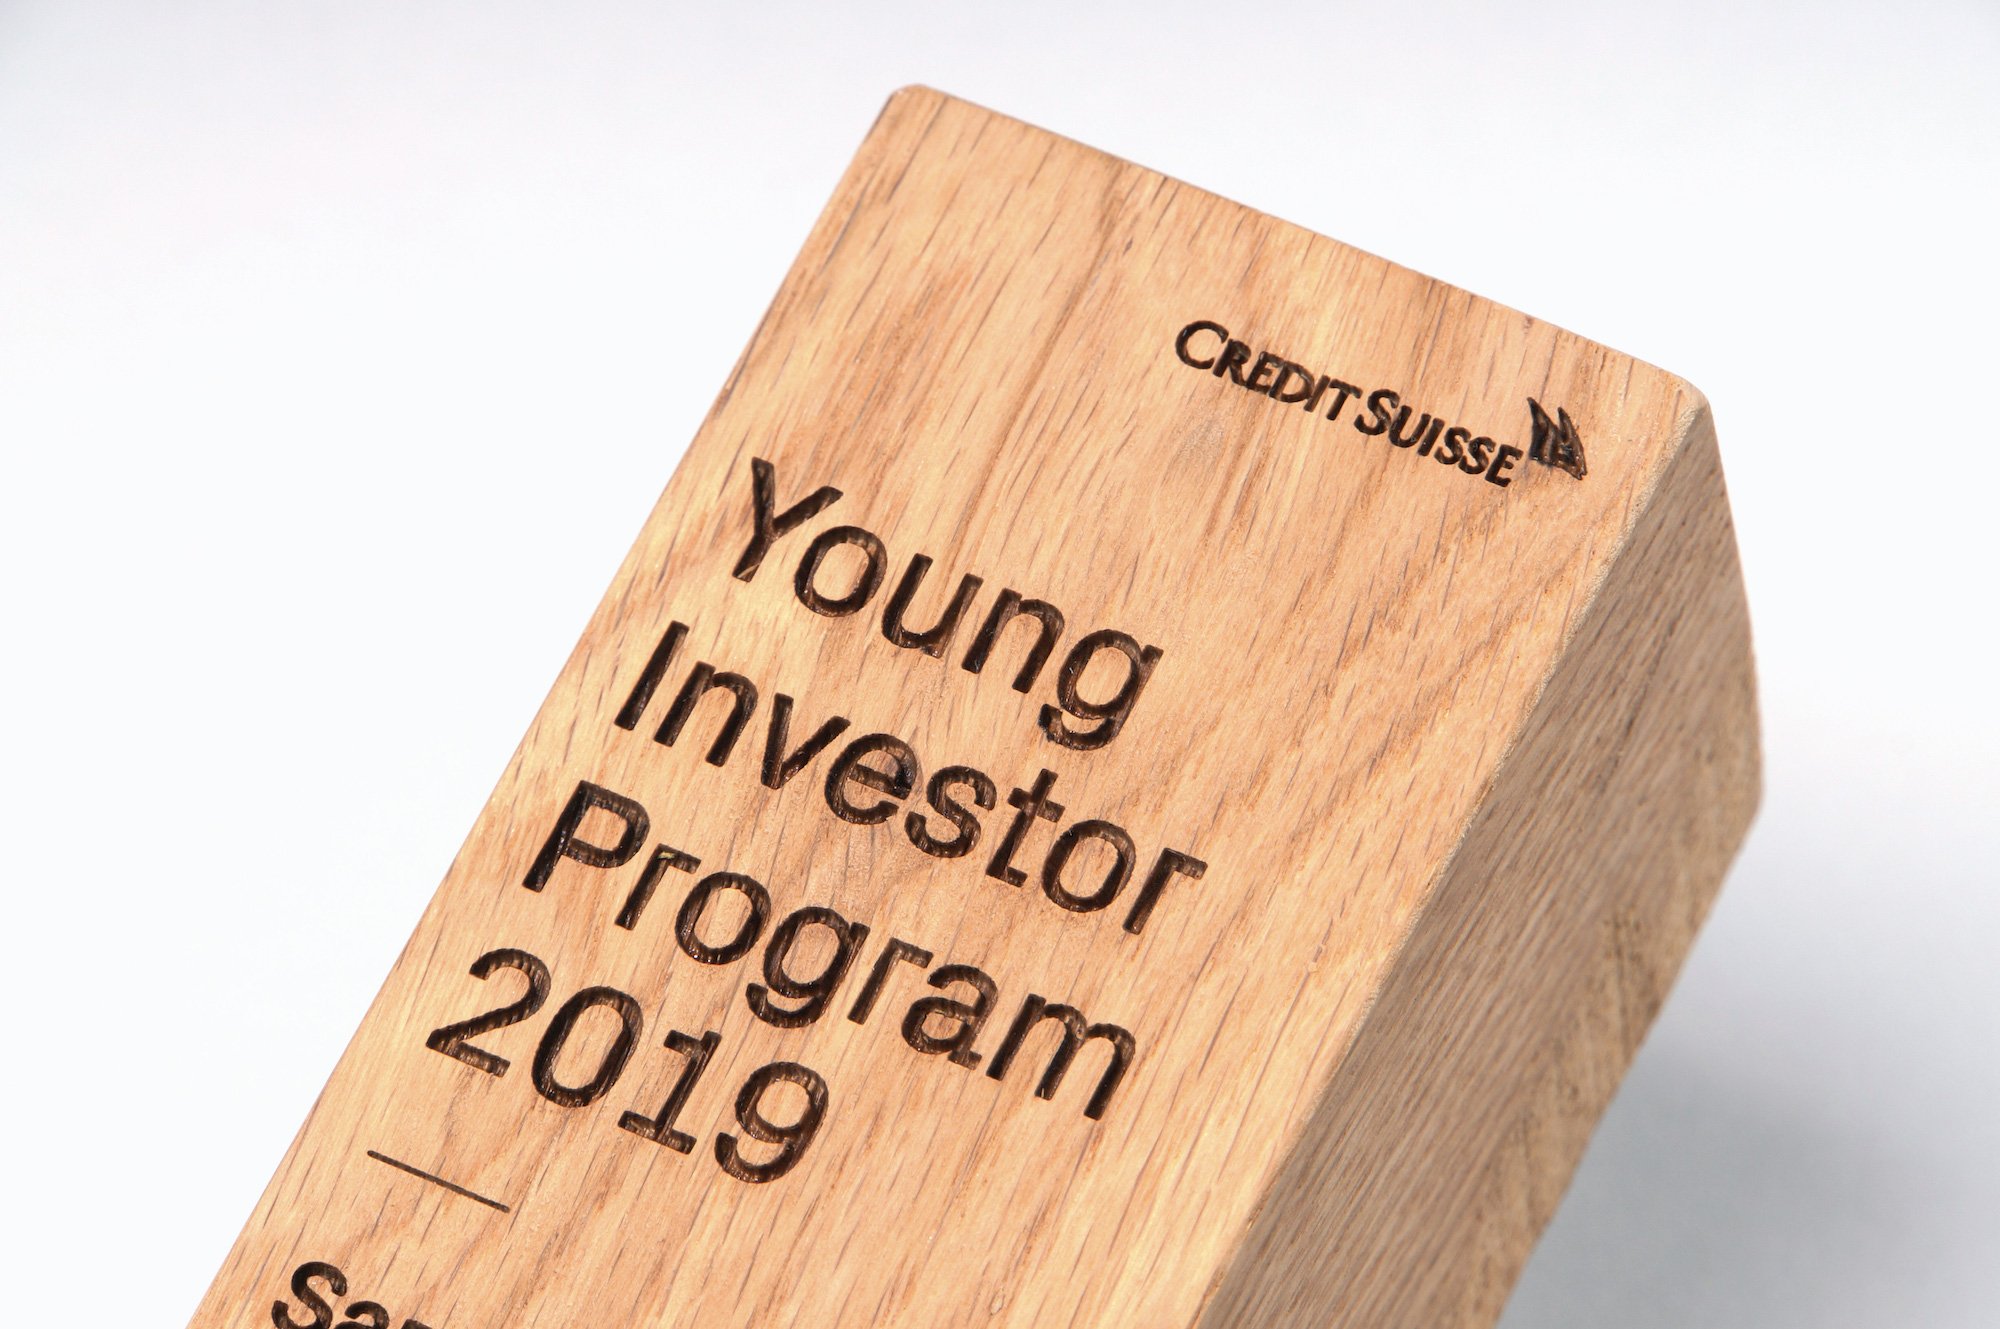 Programma Giovani Investitori 2019 di Credit Suisse